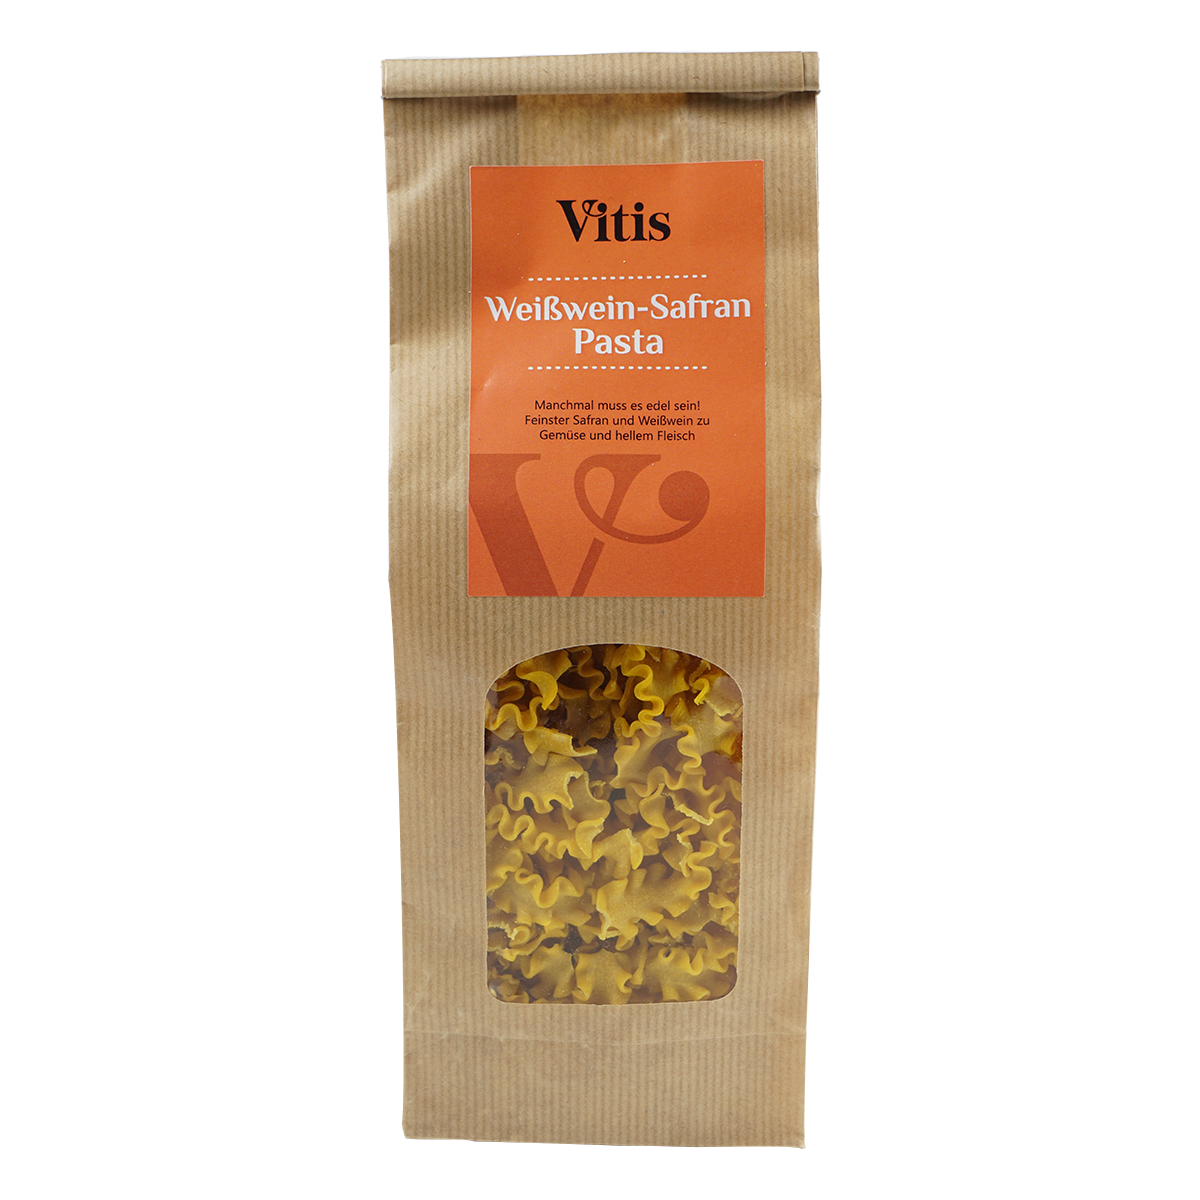 eine Packung Weißwein Safran Pasta der Firma Vitis